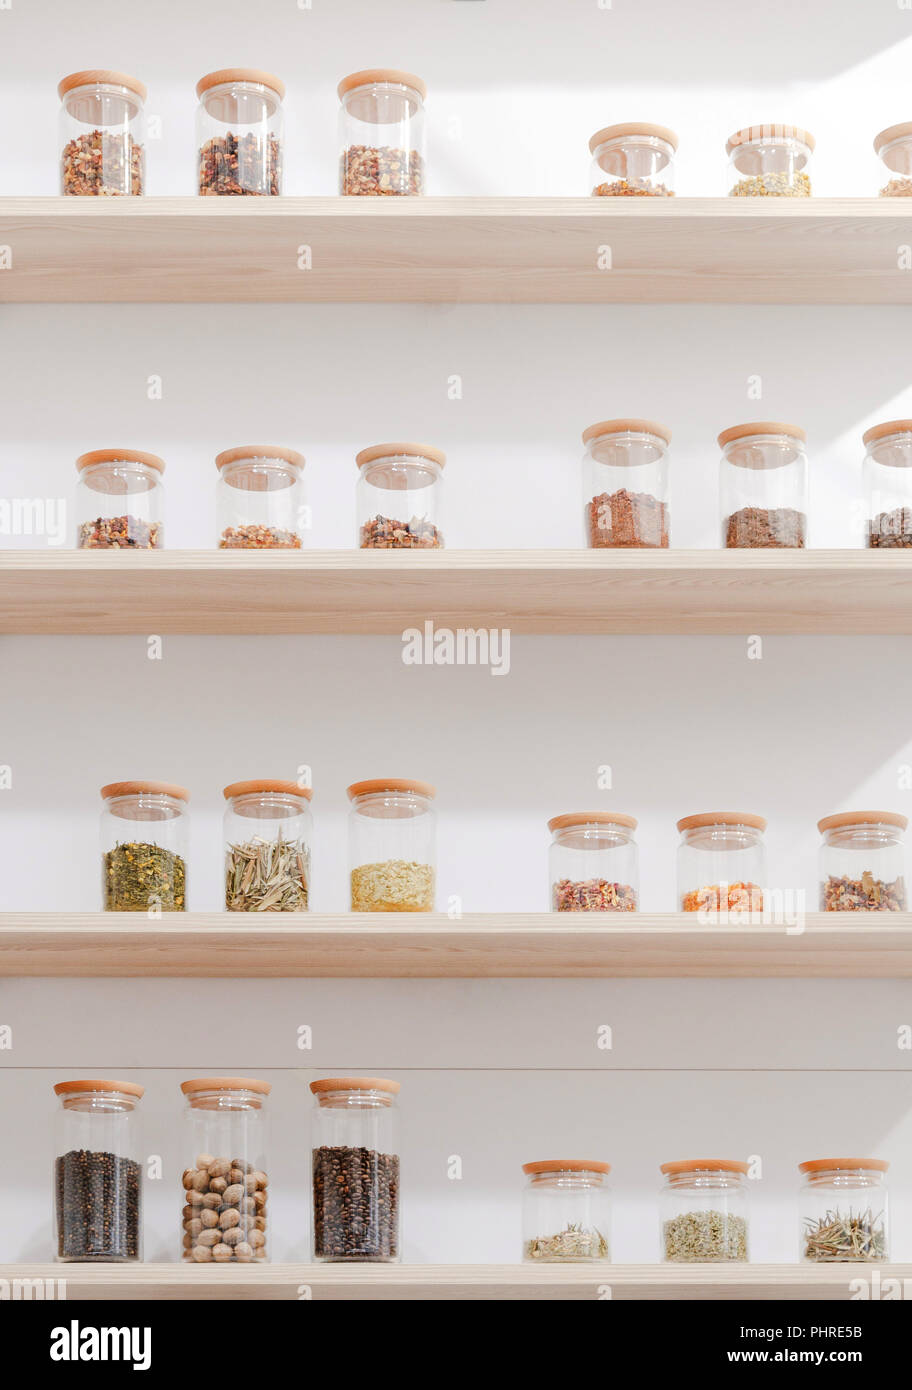 Vue rapprochée de différents ingrédients dans des contenants en verre sur des étagères en bois Banque D'Images